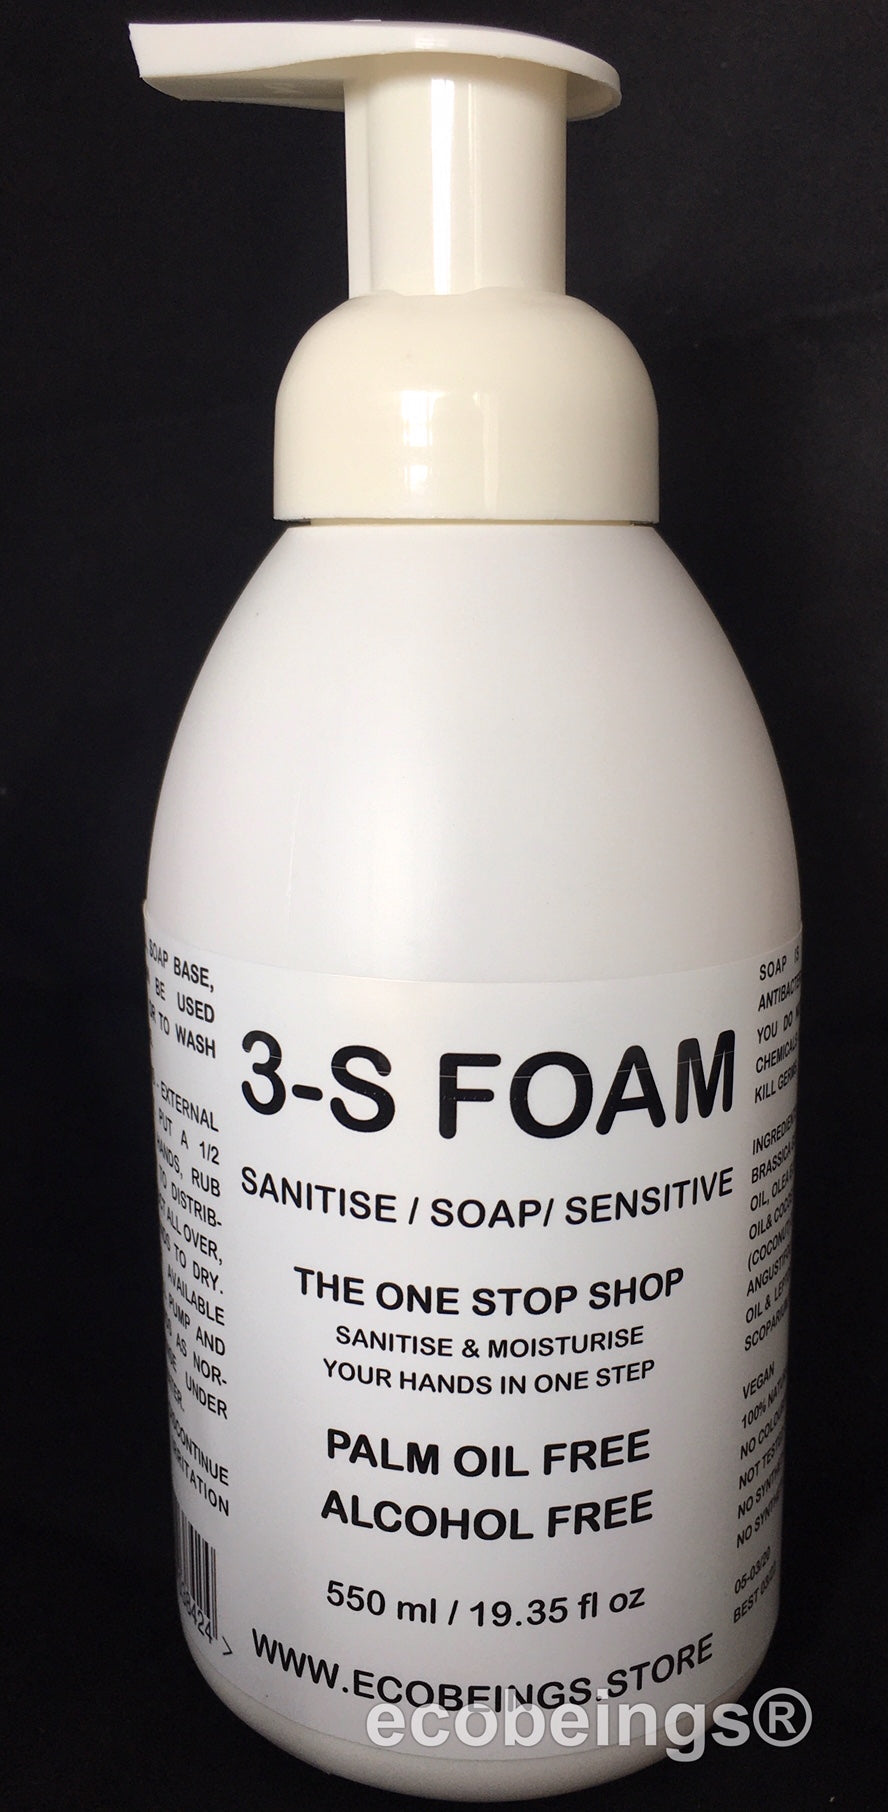 3-S FOAM - 550 ml